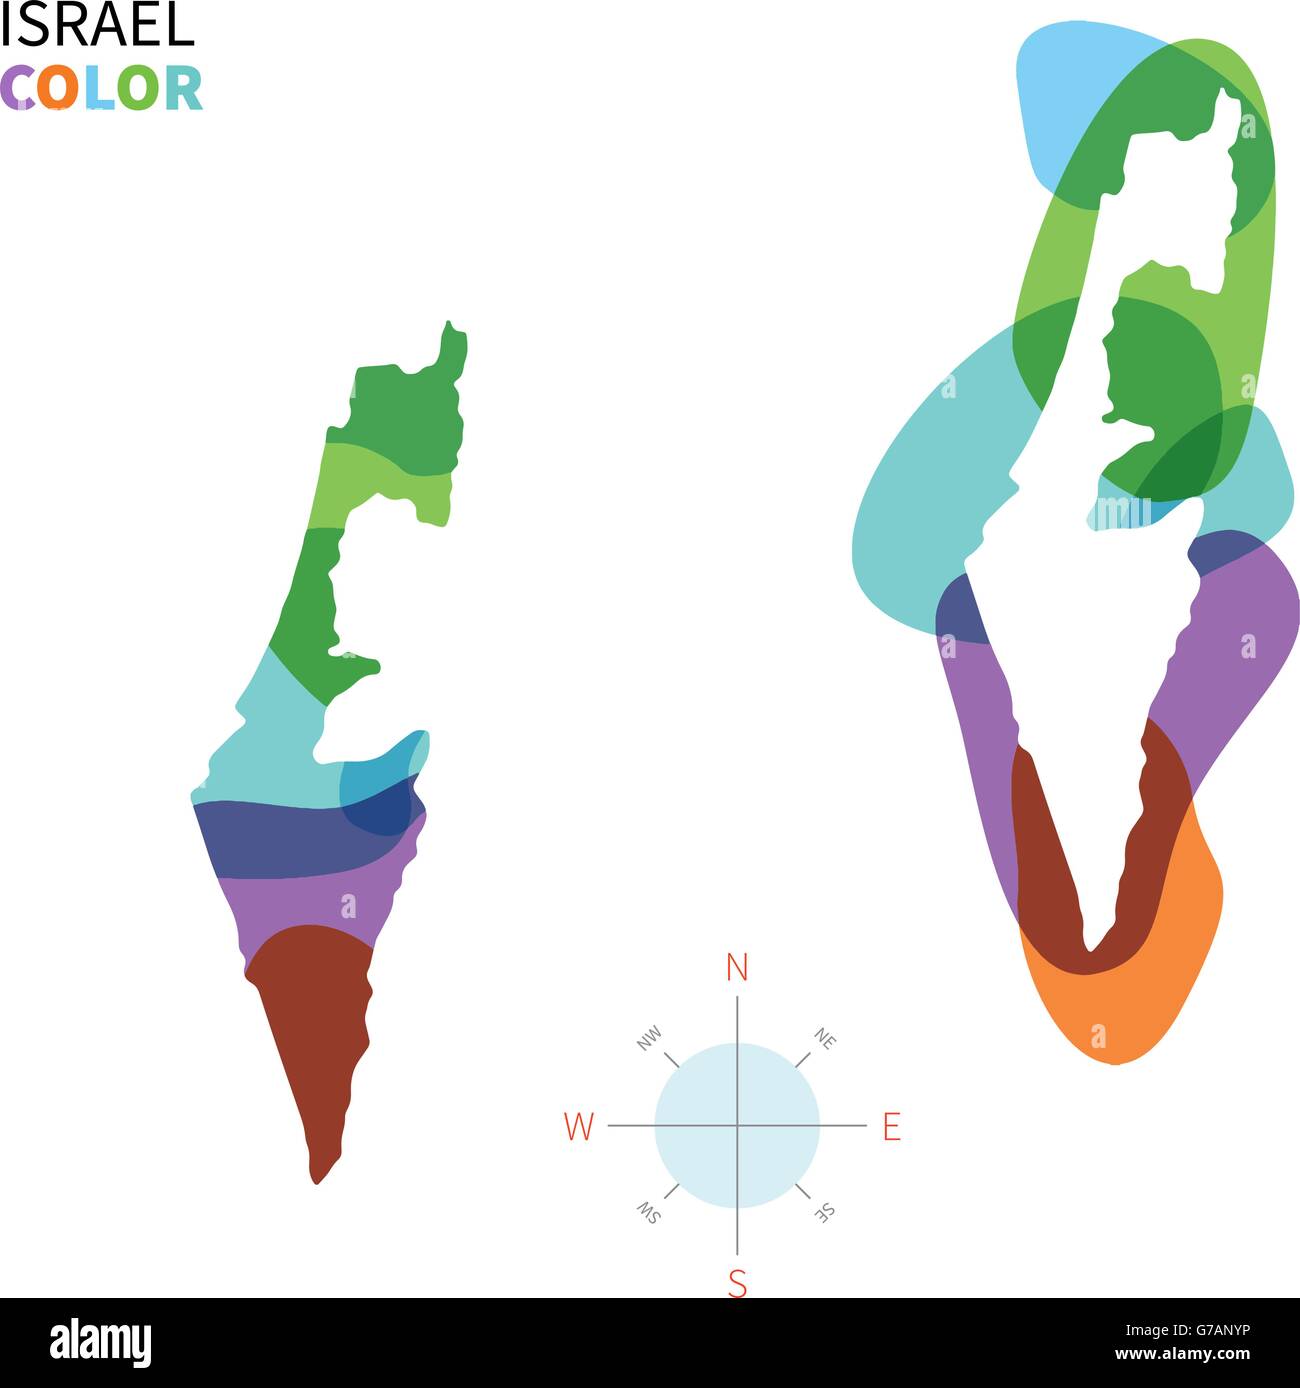 Vettore di astratta mappa a colori di Israele Illustrazione Vettoriale